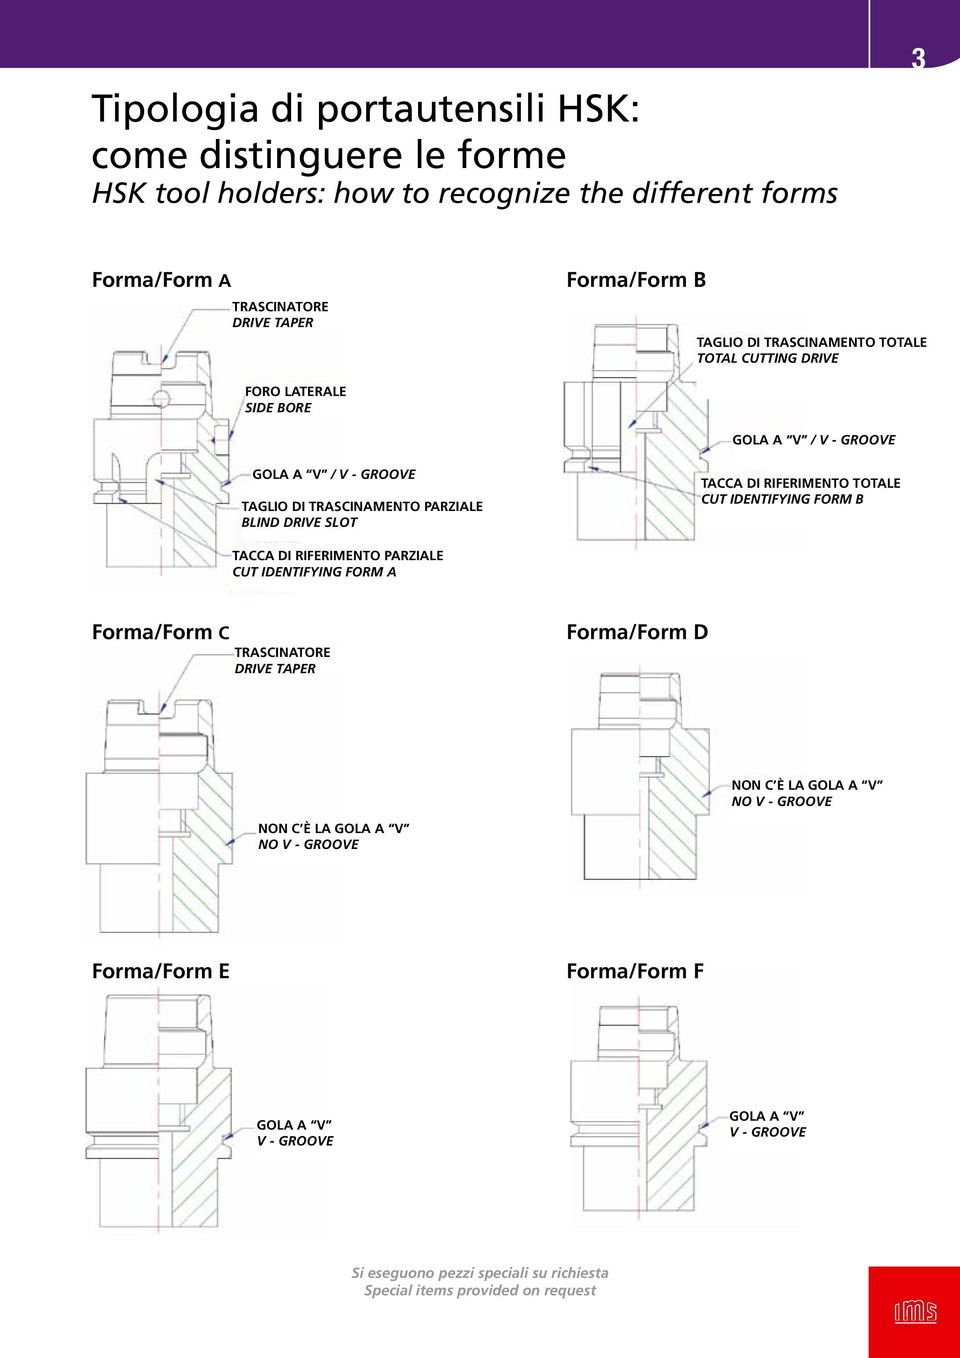 parziale Blind drive slot tacca di riferimento totale Cut identifying form B tacca di riferimento parziale Cut identifying form A Forma/Form C Trascinatore